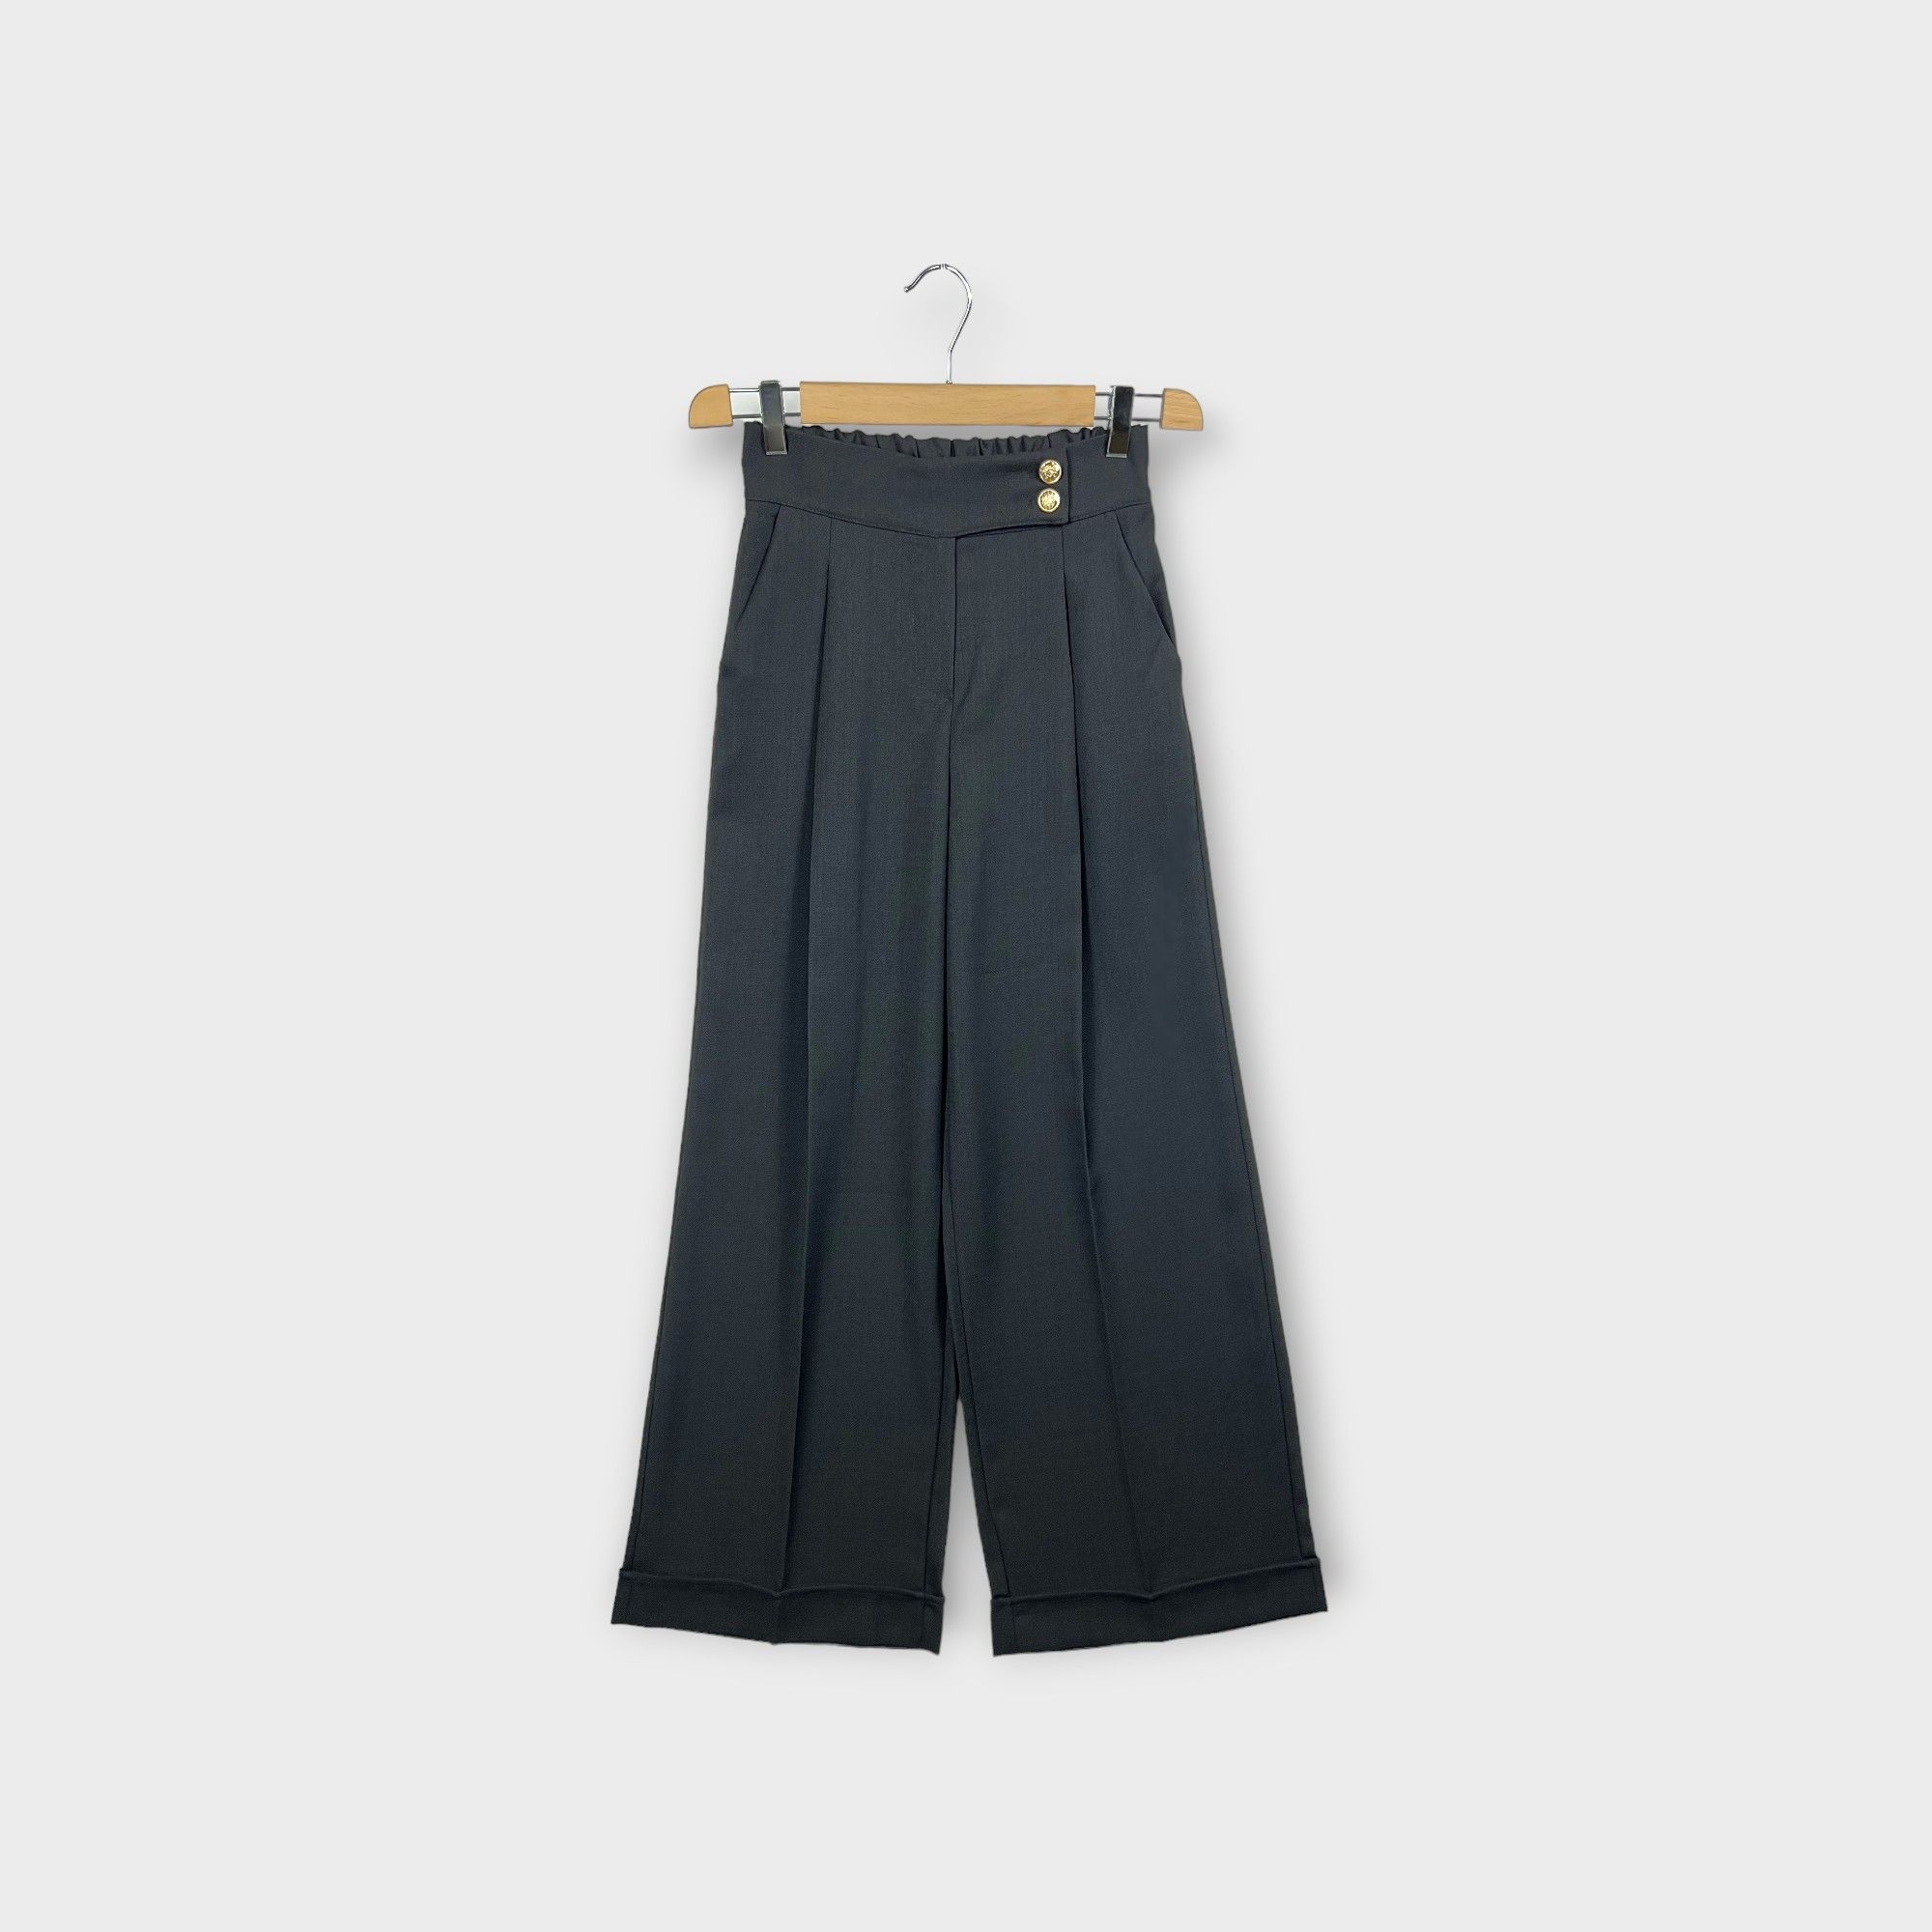 images/virtuemart/product/HELLEH pantaloni donna modello palazzo con pinces e risvolto al fondo colore nero 1.jpg